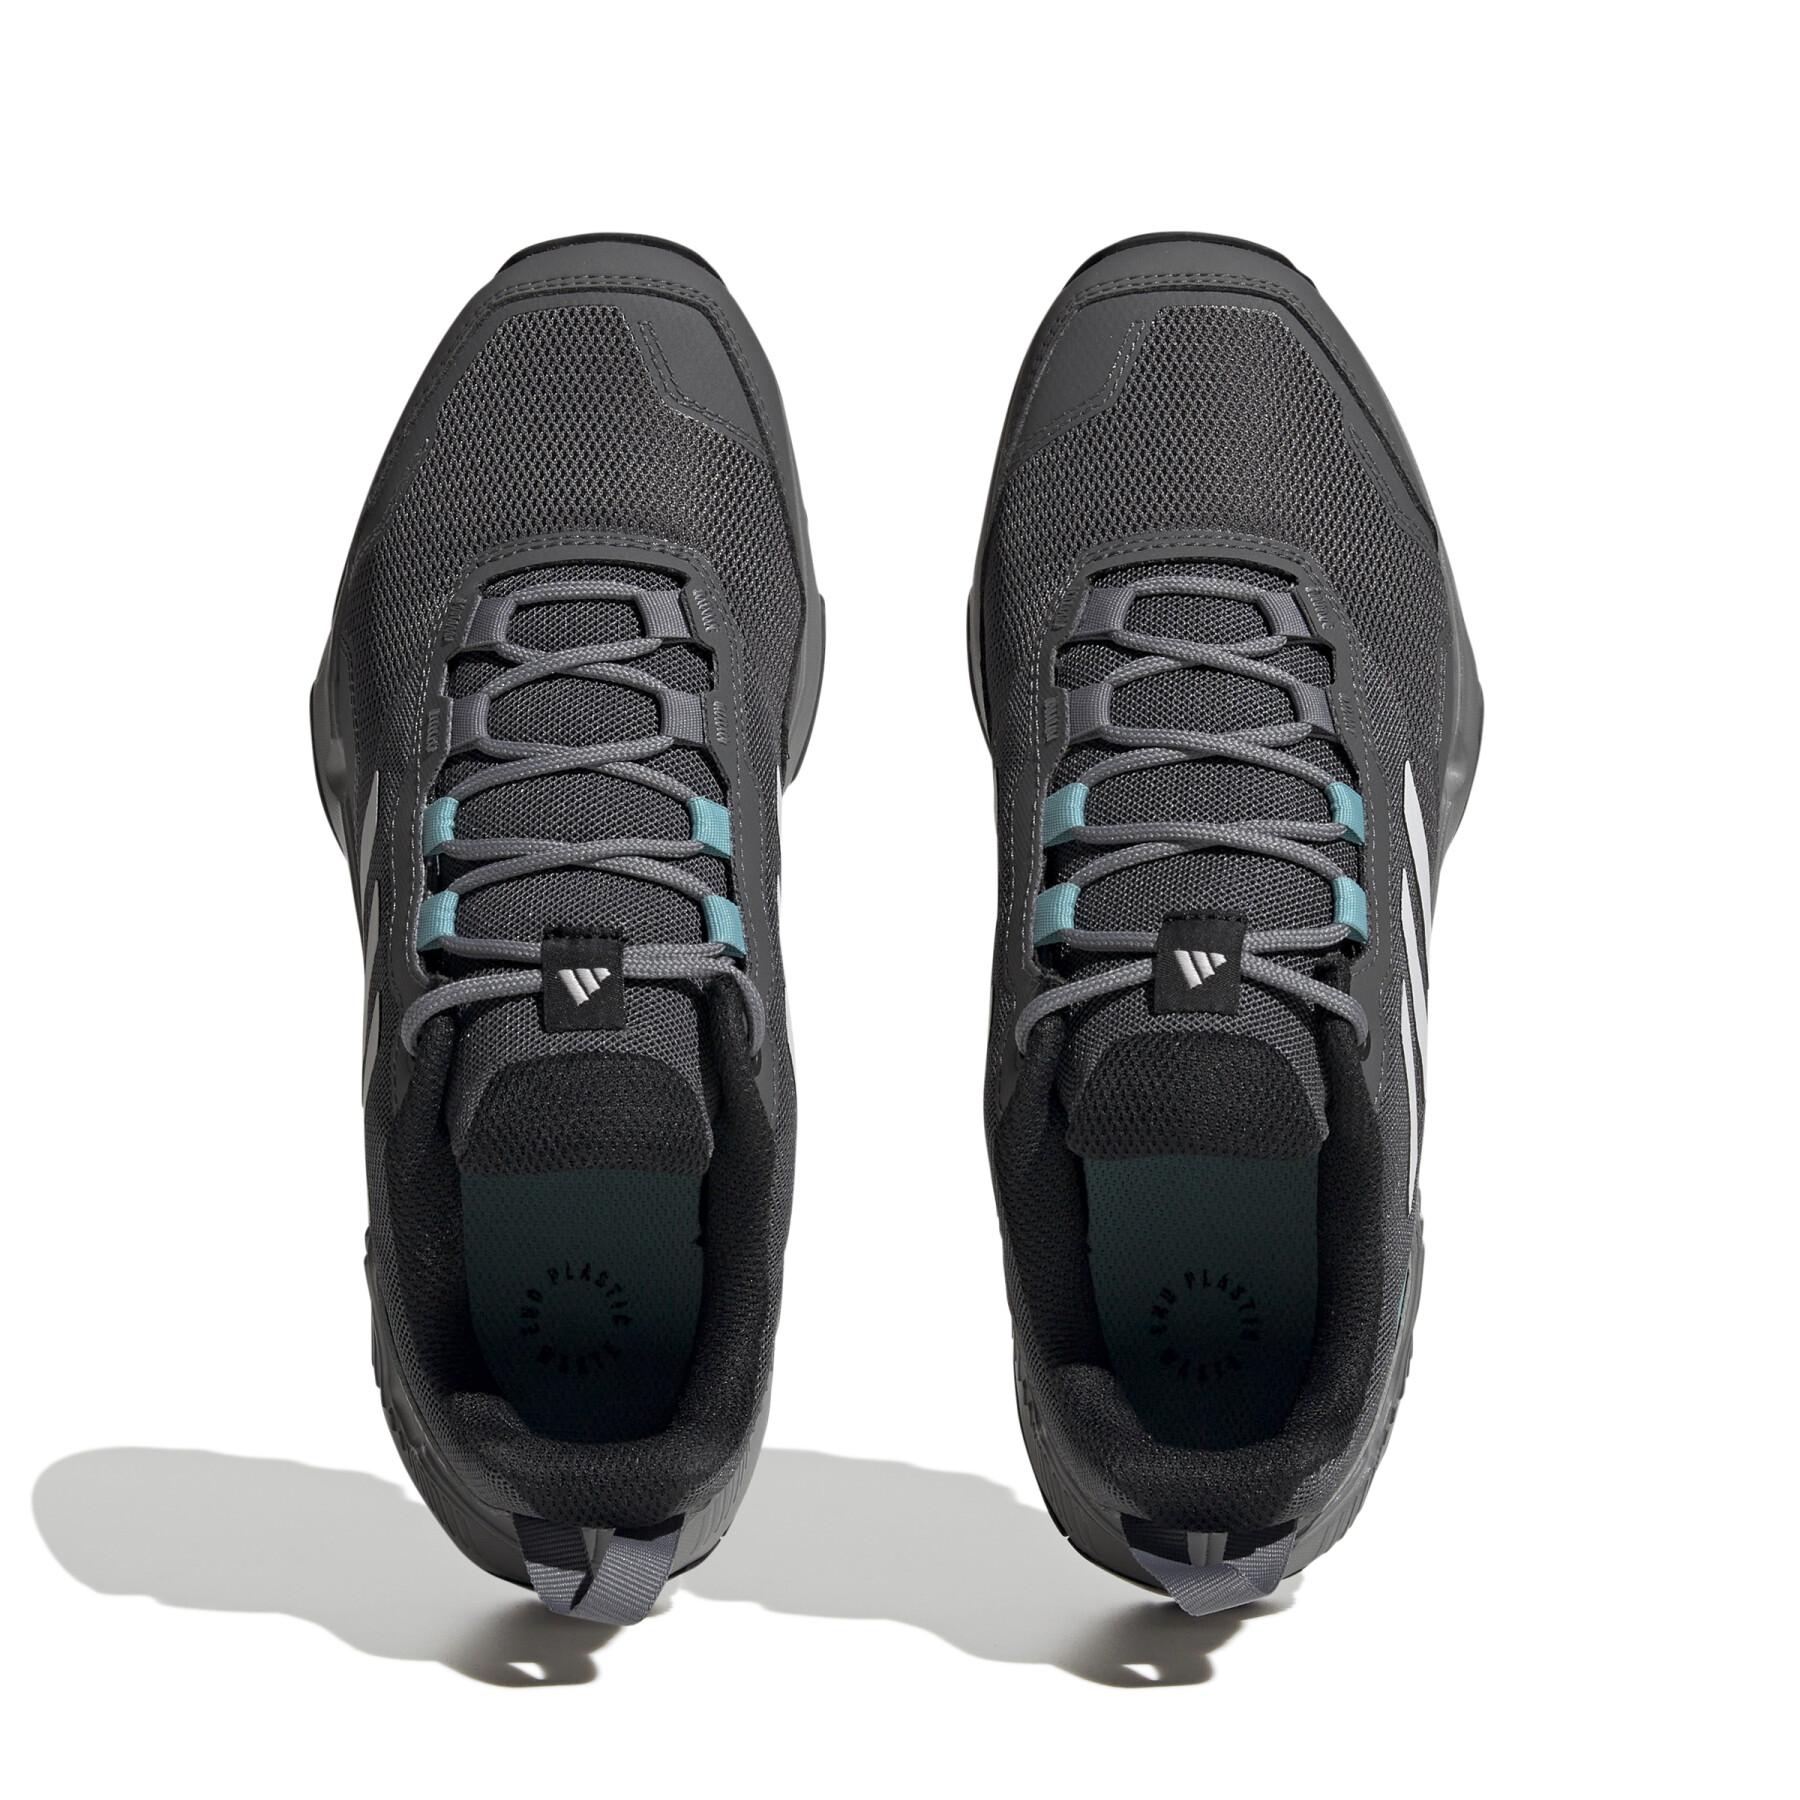 Trailrunning-Schuhe für Frauen adidas Eastrail 2.0